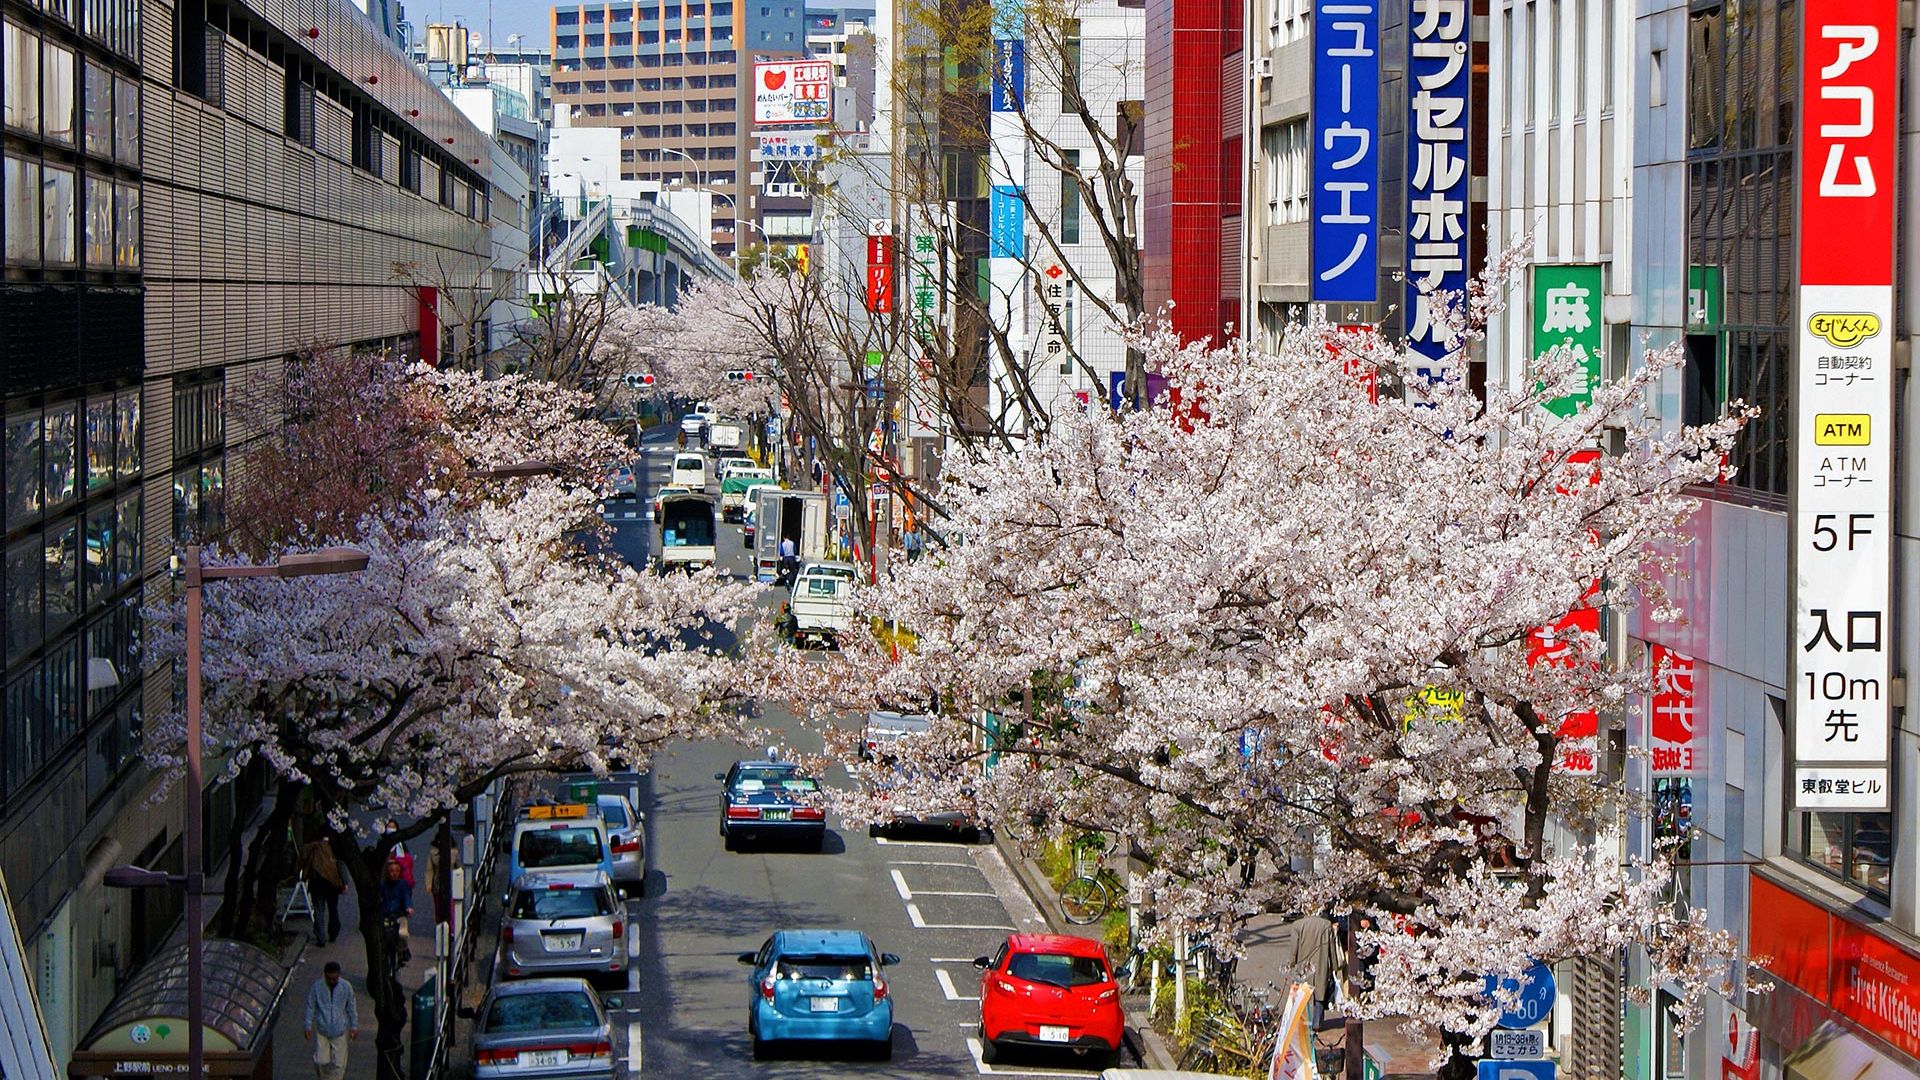 Circuit de grup - Sakura - Sarbatoarea ciresilor infloriti din Japonia, recomandat de Razvan Pascu, 10 zile - 03 aprilie 2023